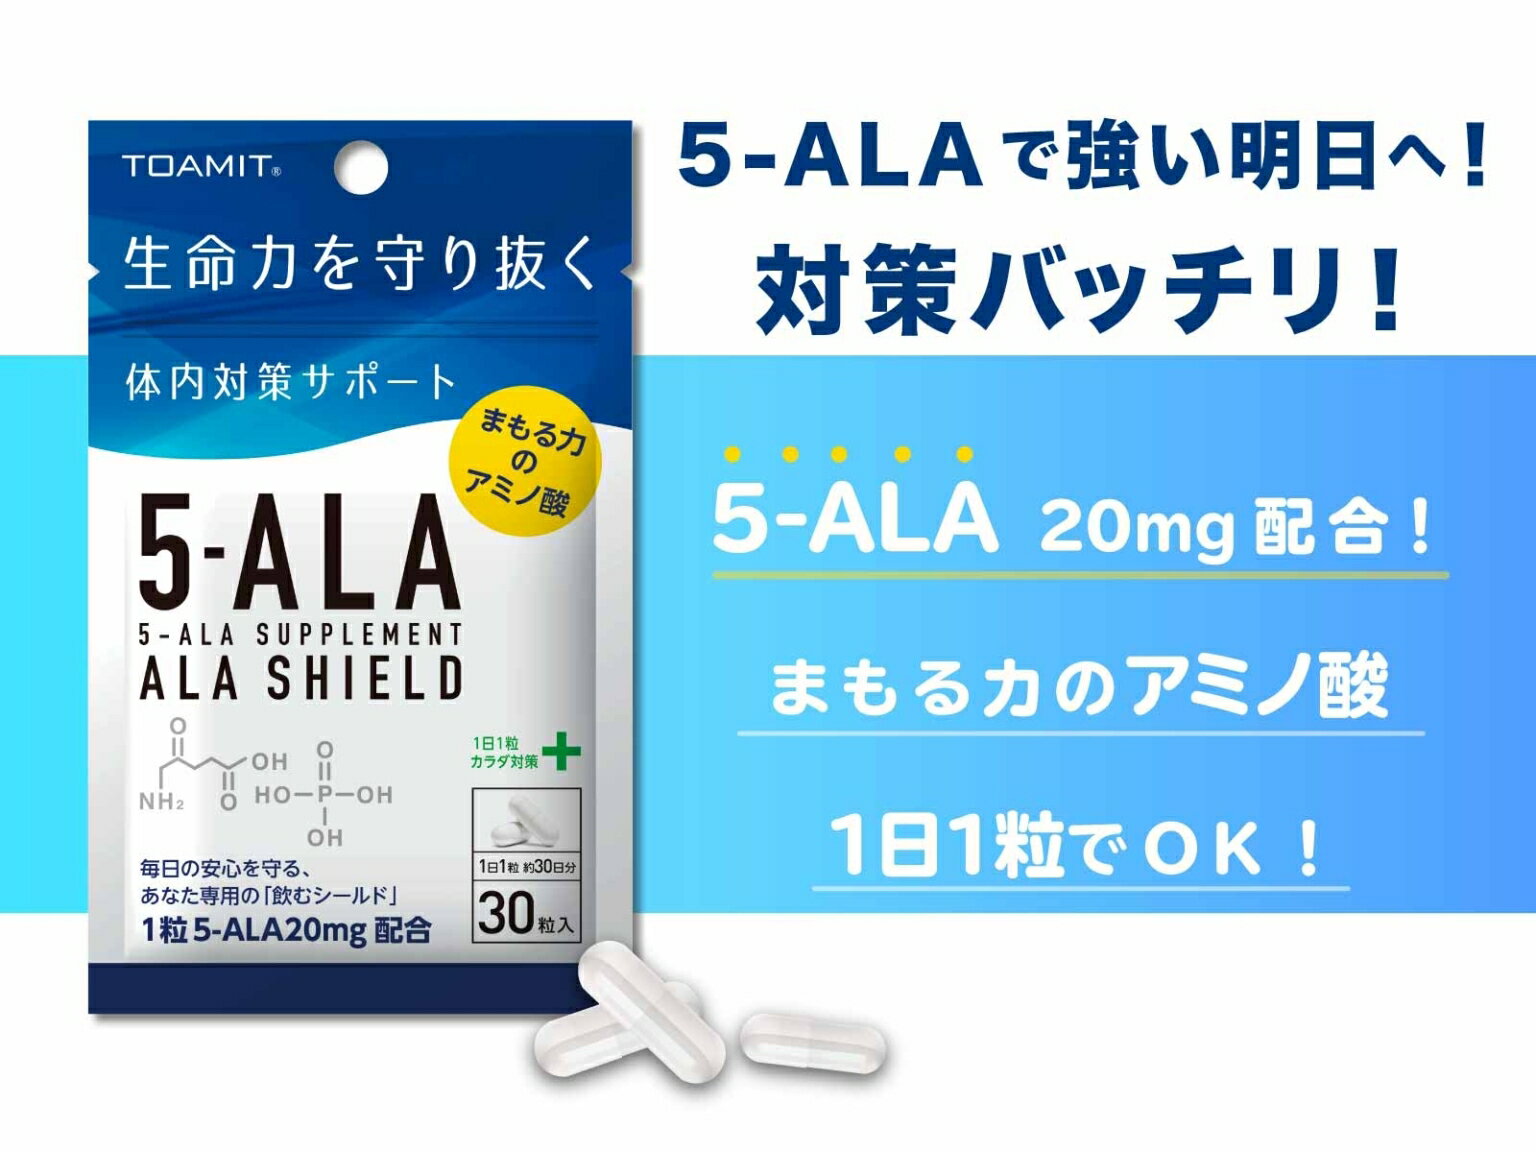 日本製 5-ALAサプリメント アラシールド 30粒入 約1か月分 TOAMIT 東亜産業 アミノ酸 クエン酸 飲むシールド 体内対策サポート 5-アミノレブリン酸 毎日の健康に MADE IN JAPAN